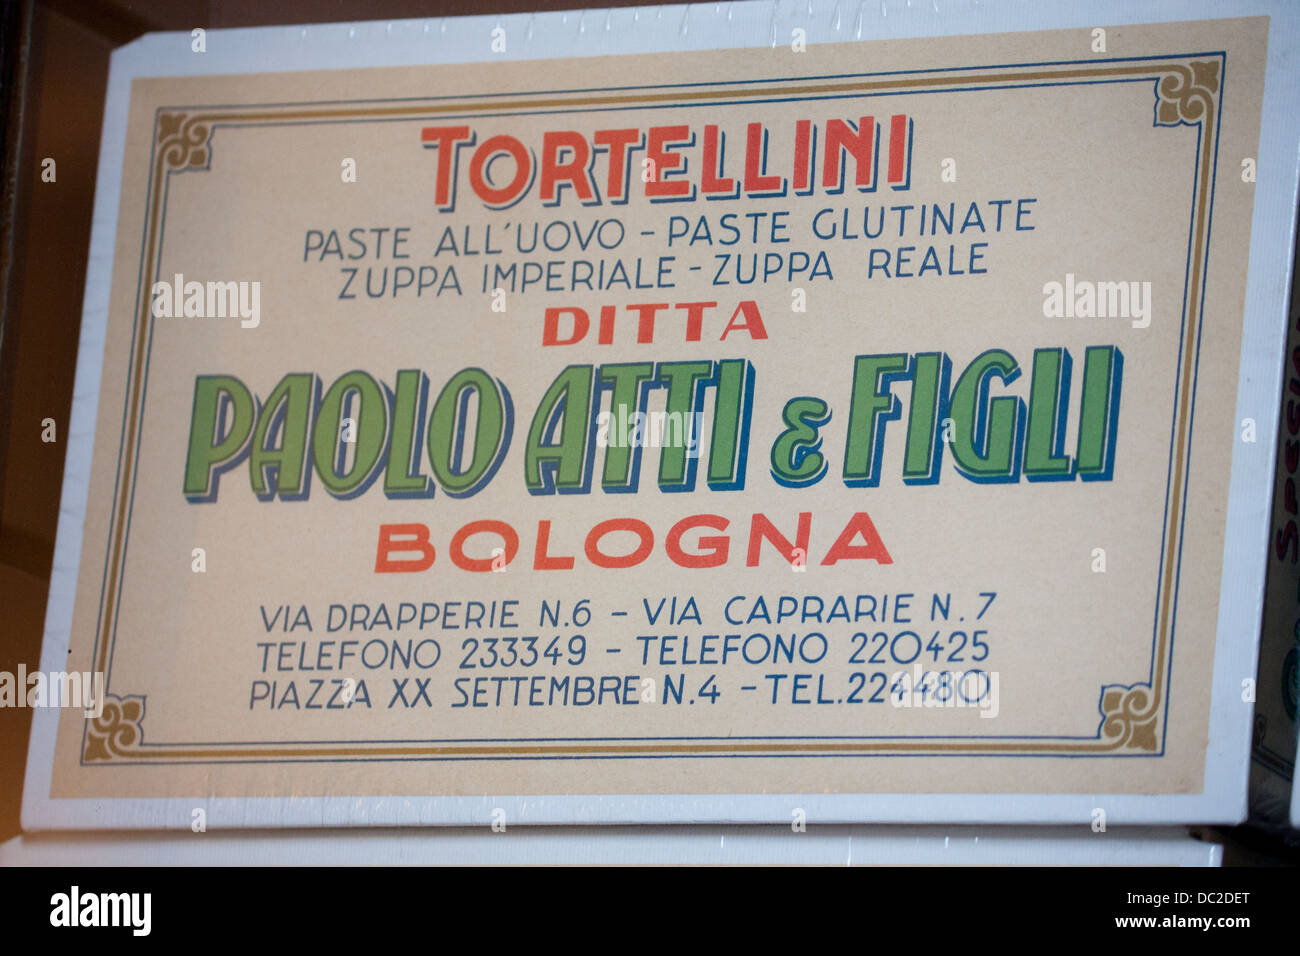 Tortellini pasta presentation box Paolo Atti e Figli ( & Sons) family pasta making firm Bologna Emilia Romagna Italy Stock Photo